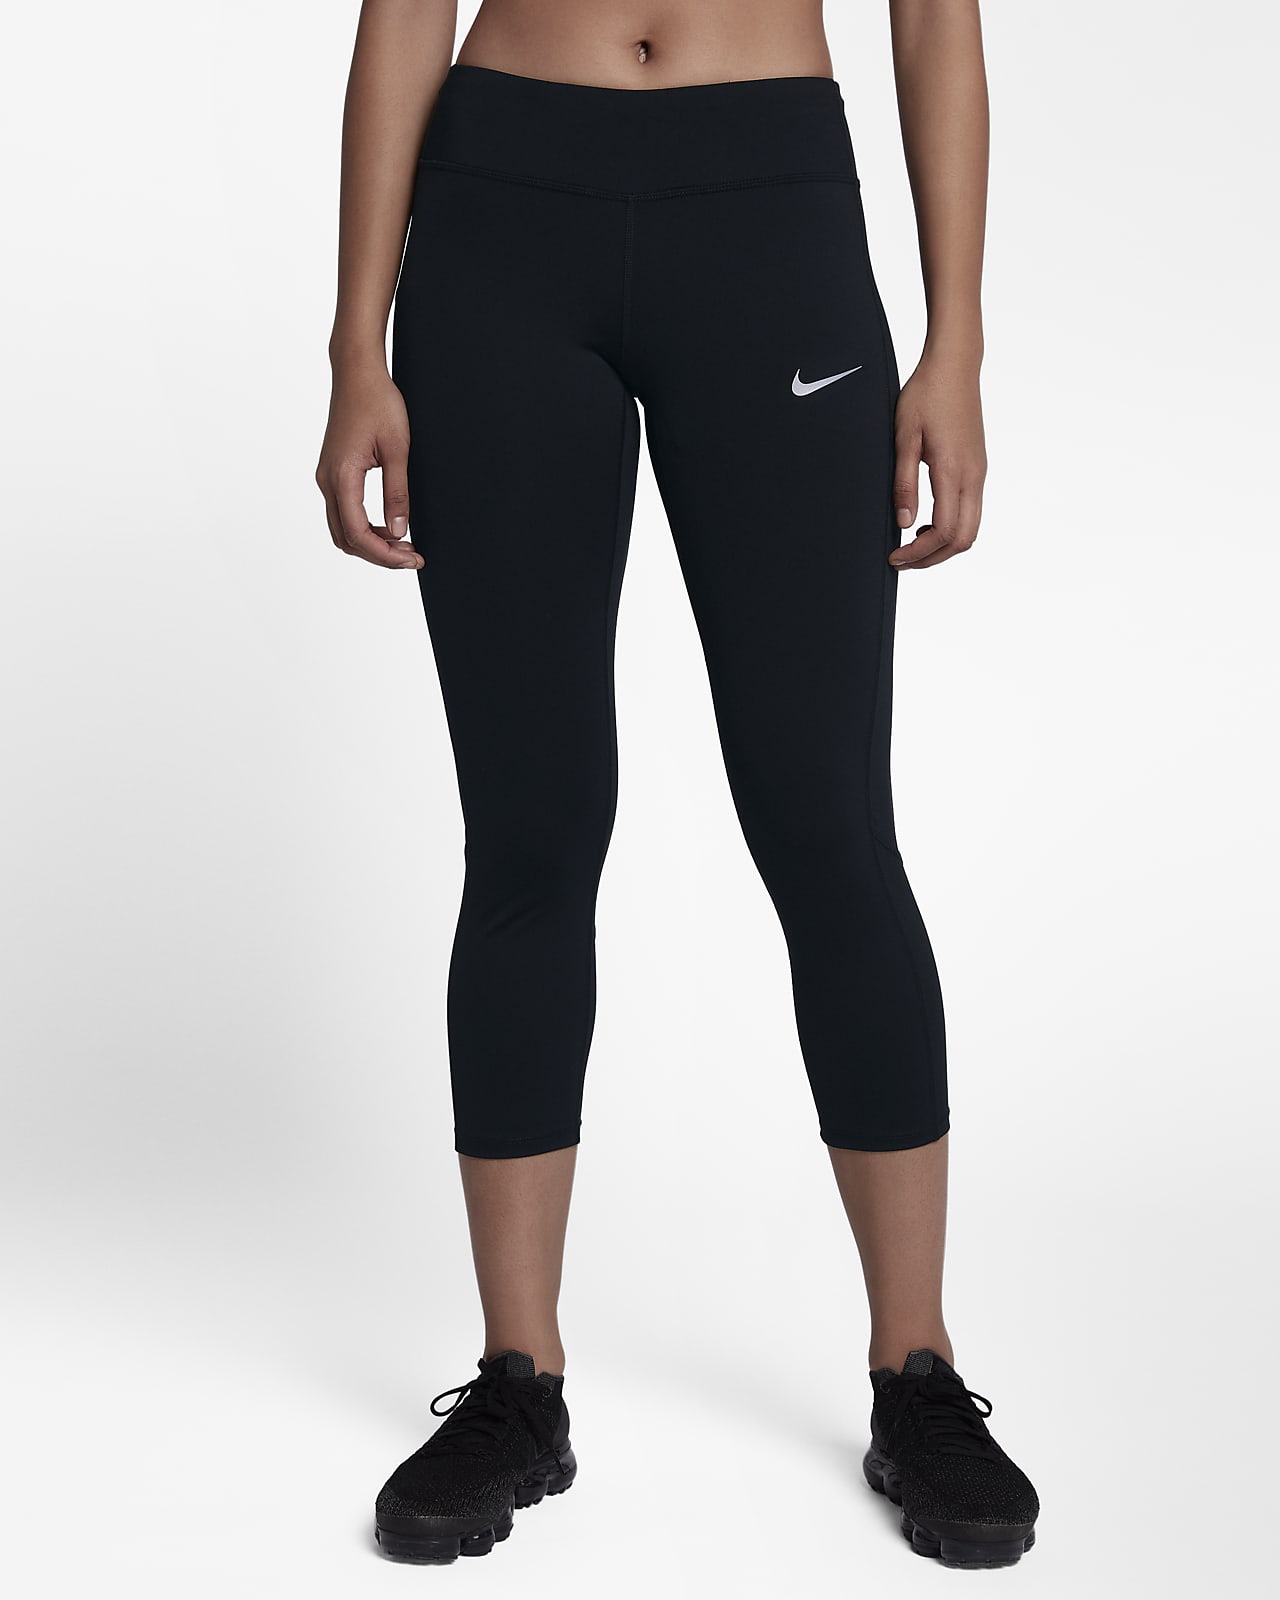 Nike Racer Women's Mid-Rise Running 